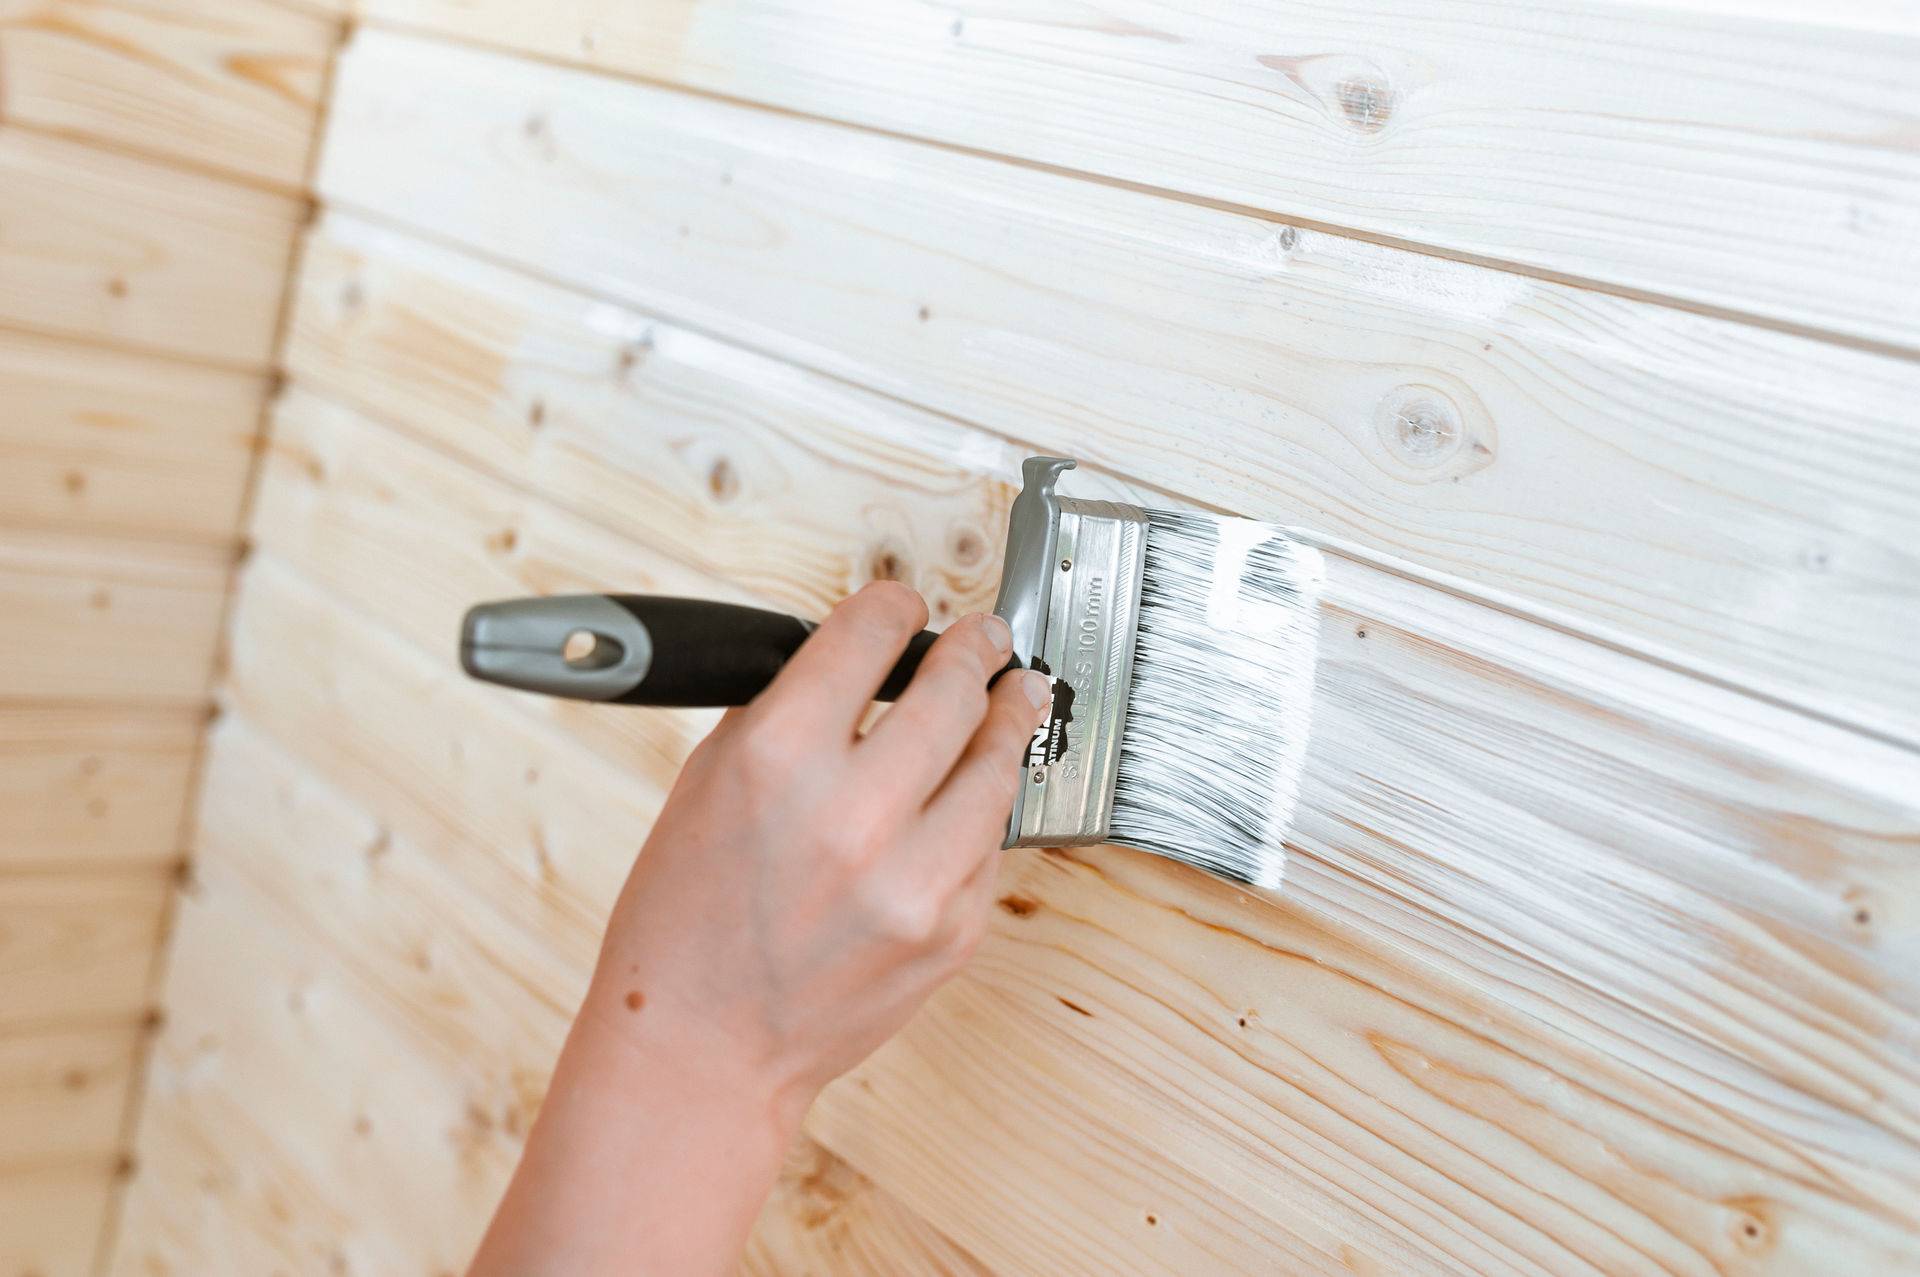 Как выбрать лучшую фасадную краску по дереву для наружных работ + особенности покраски деревянного фасада